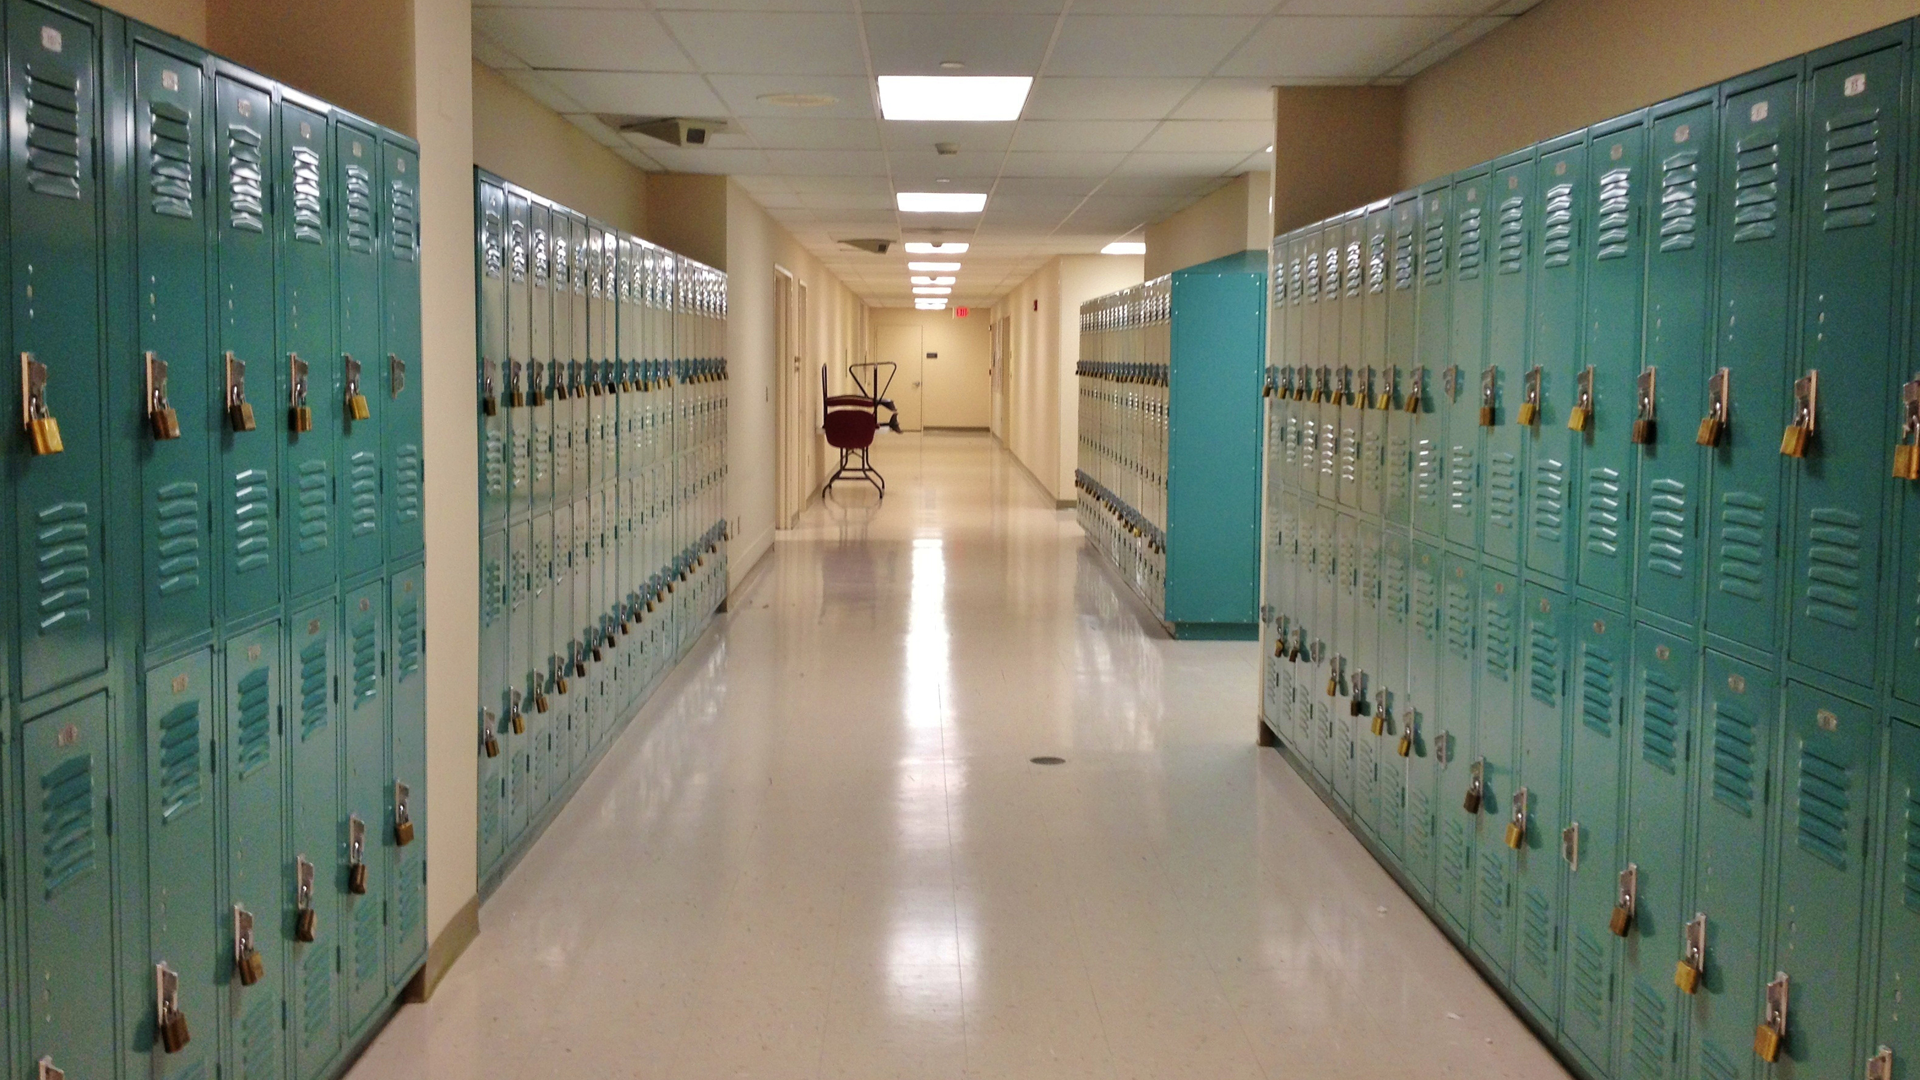 A high school corridor